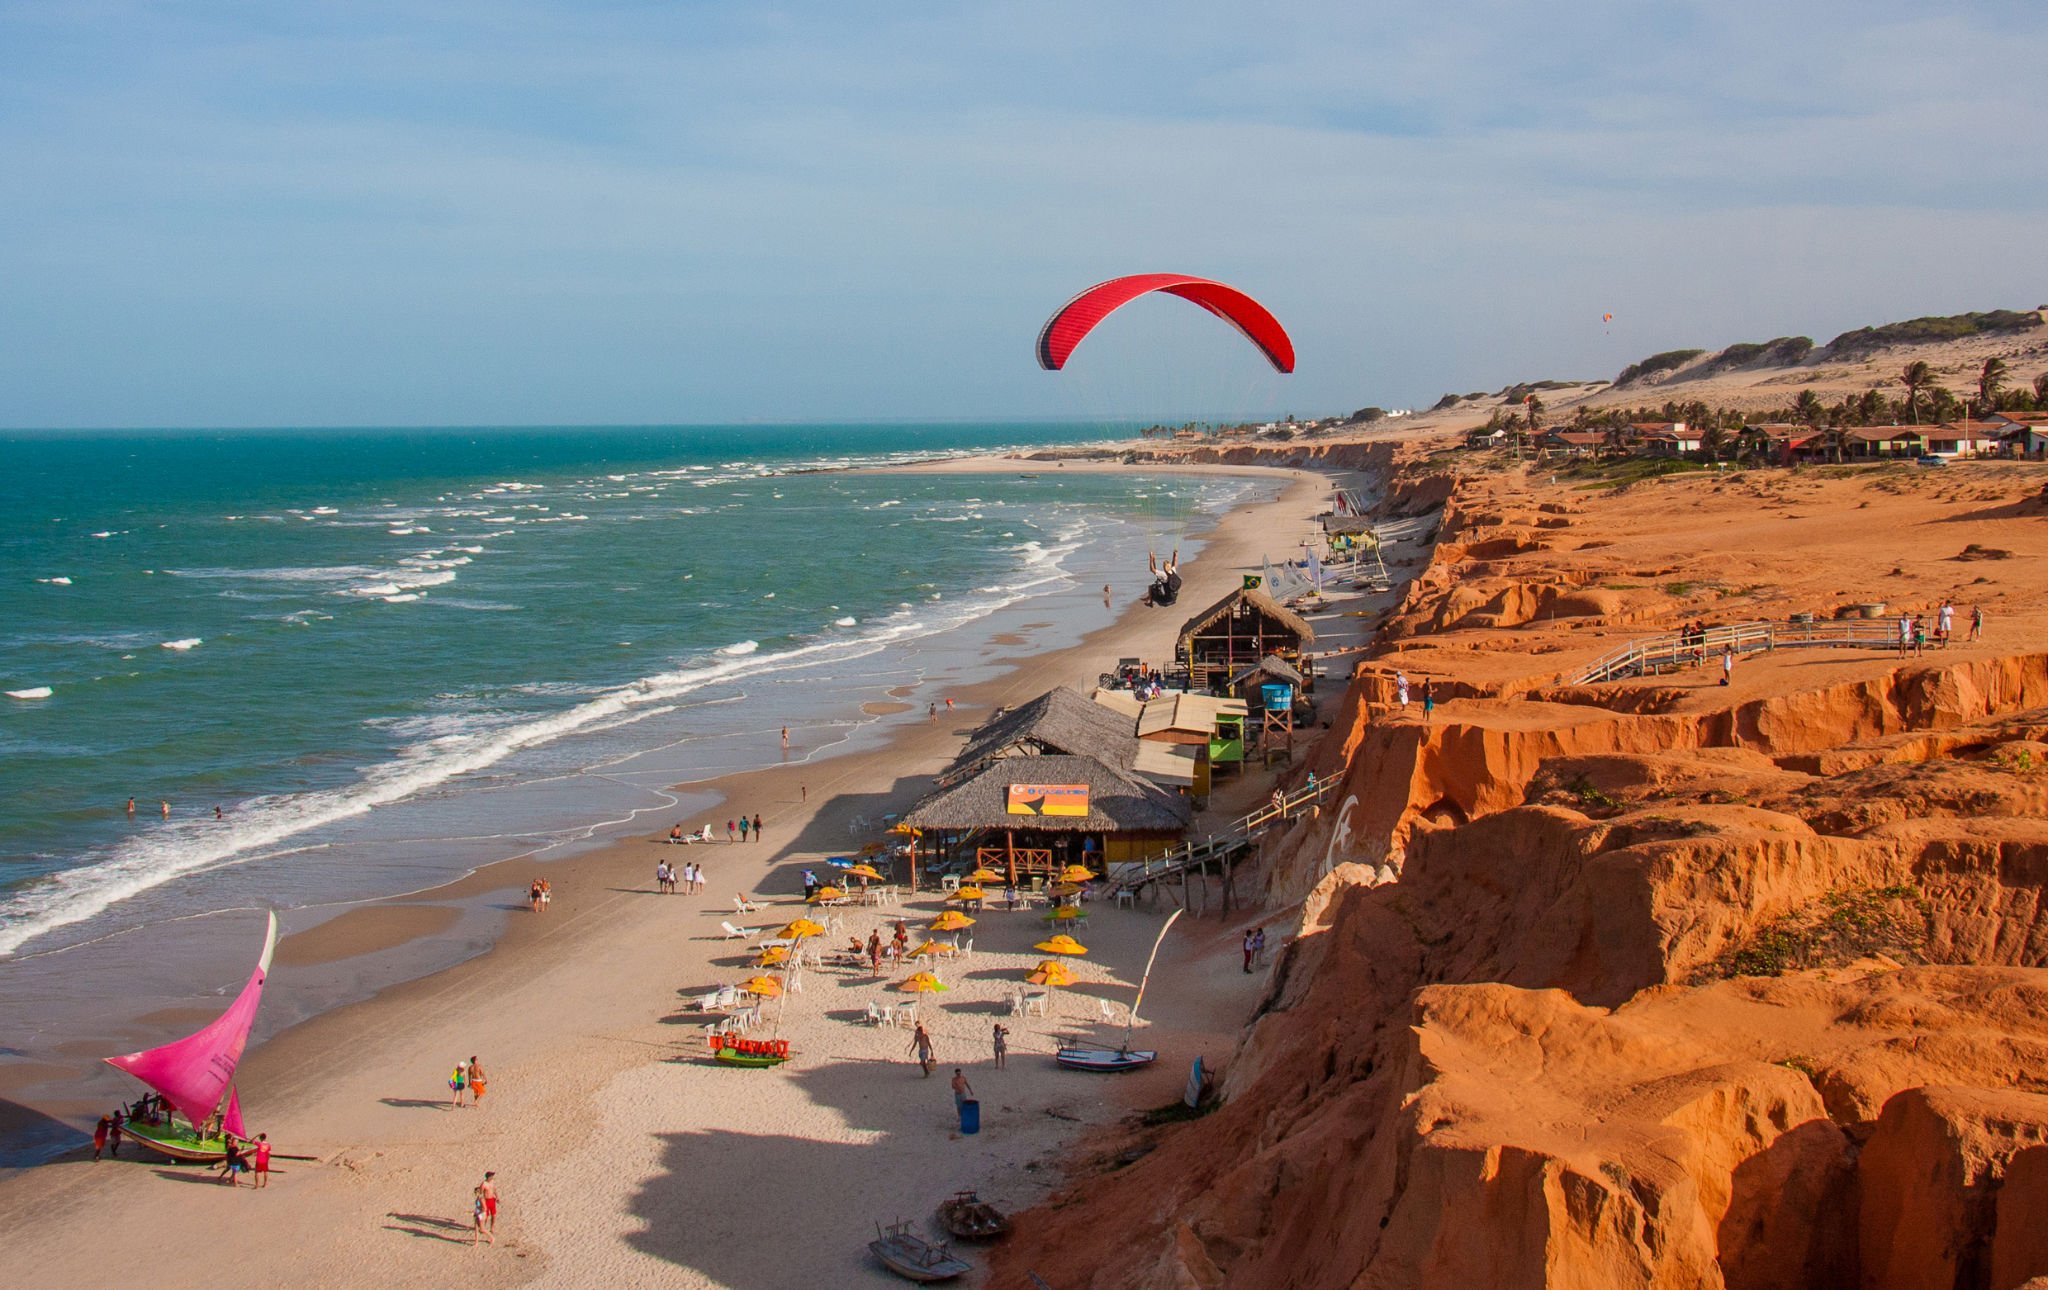 Viagens: 7 praias lindas no Brasil com ótimo custo-benefício para viajar